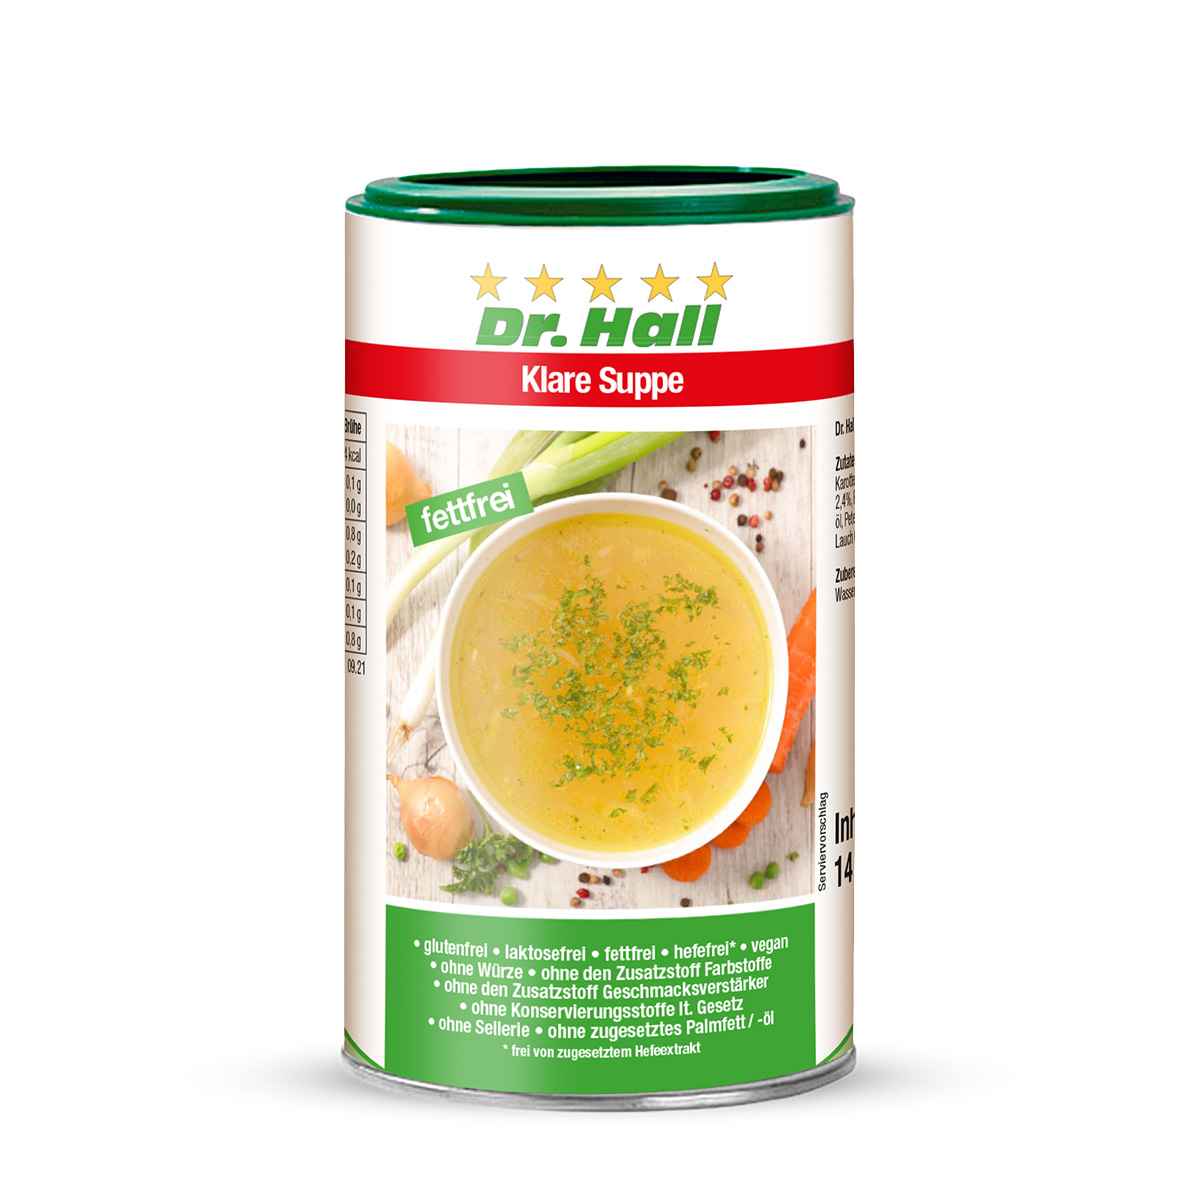 Klare fettfreie Suppe von Dr. Hall 